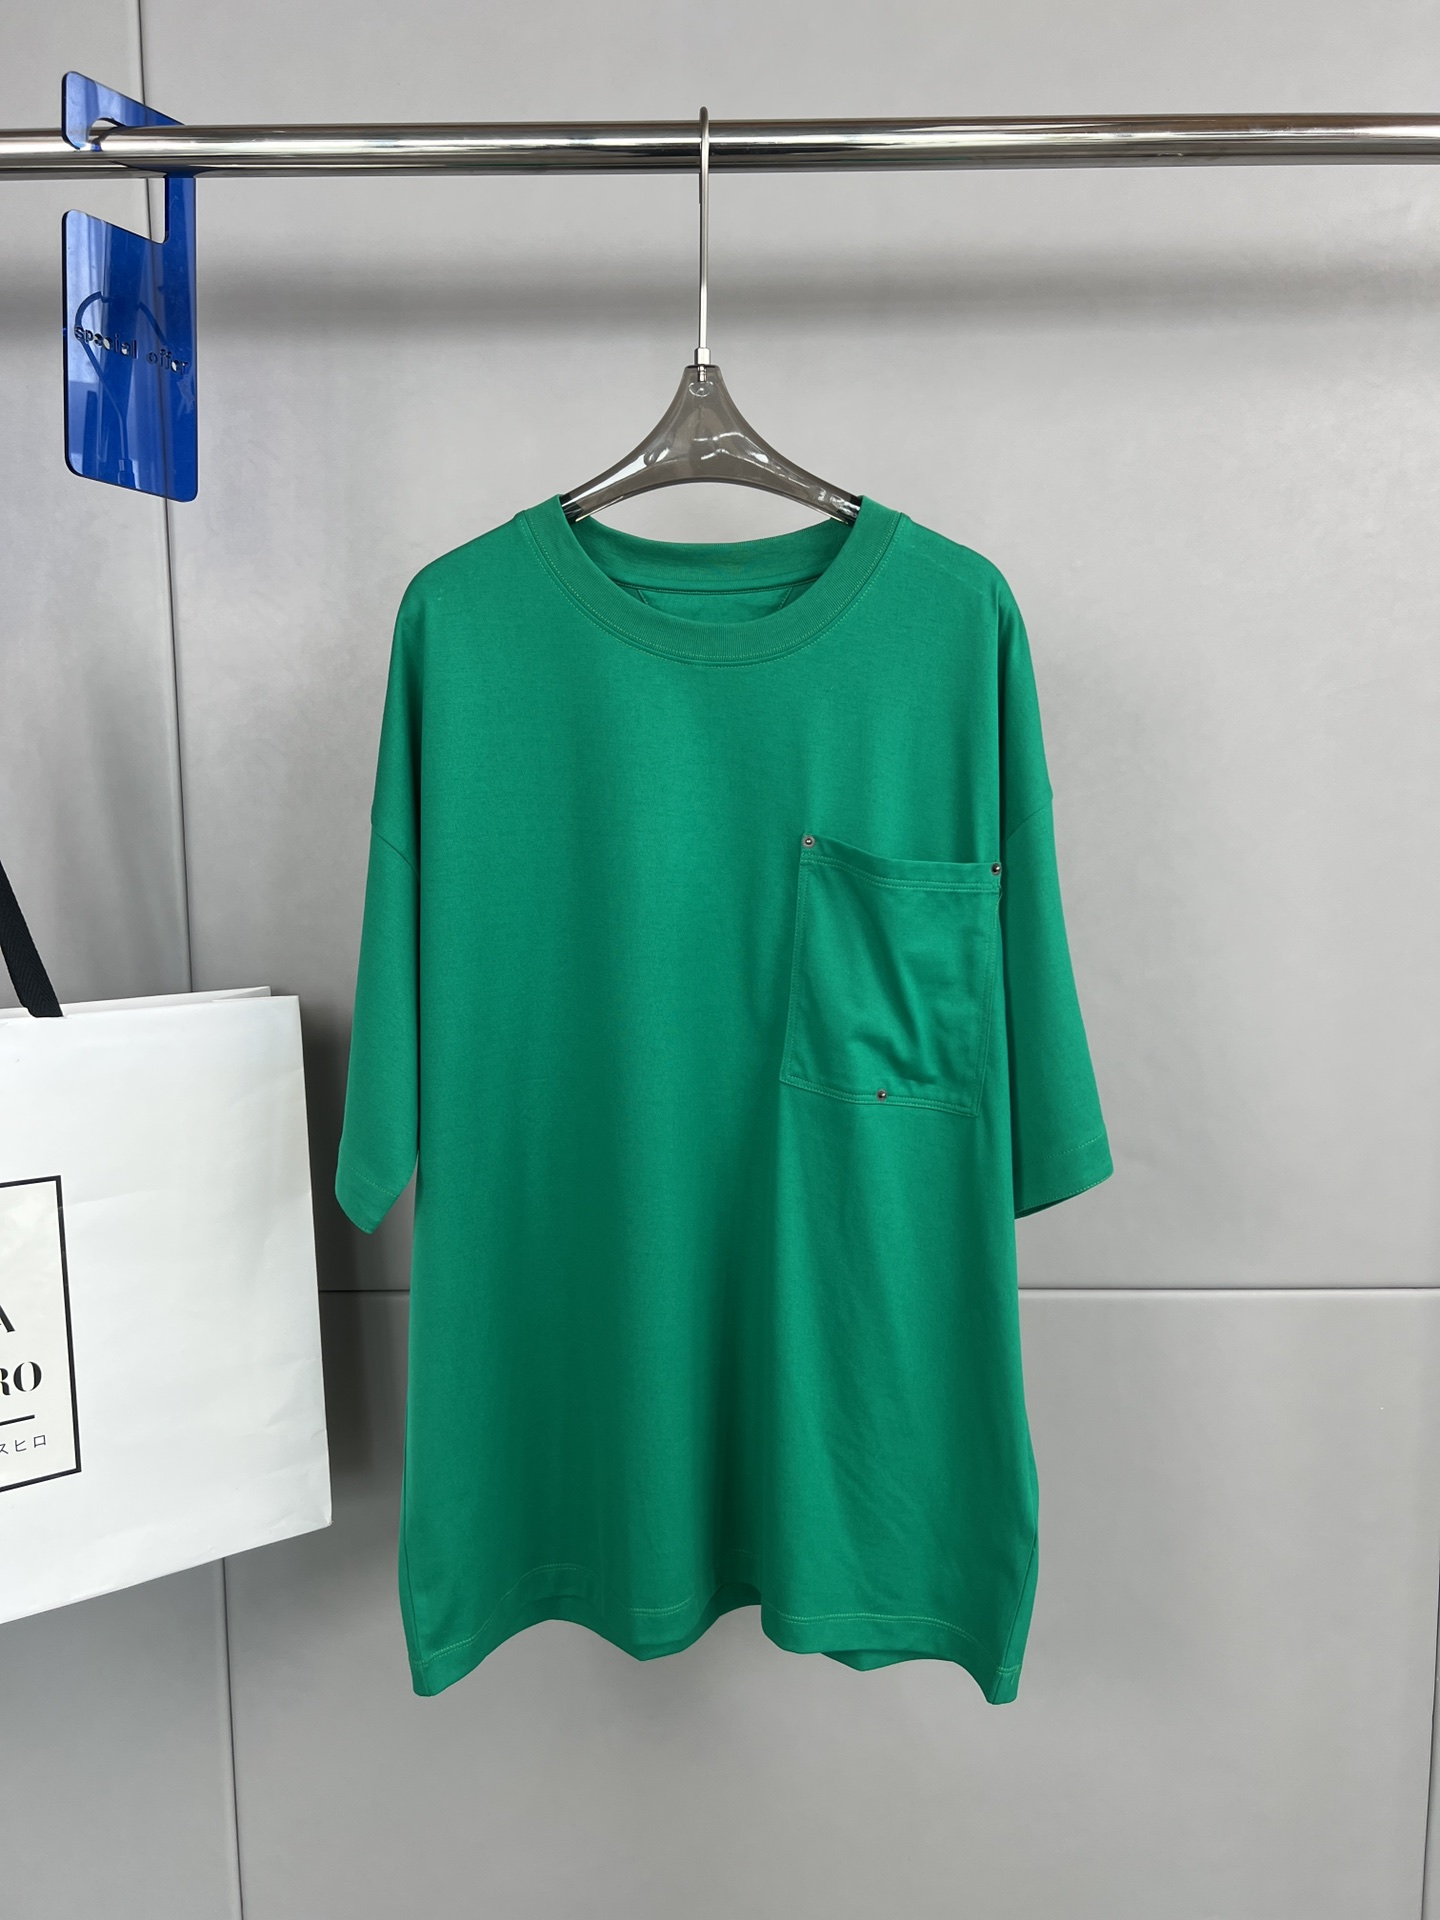 Bottega Veneta BV 夏季新款 纯色宽松休闲短袖T恤 口袋三颗扣子V型细节、背面领口品牌标志性三角形刺绣、宽松版型、男女同款码数S- XL